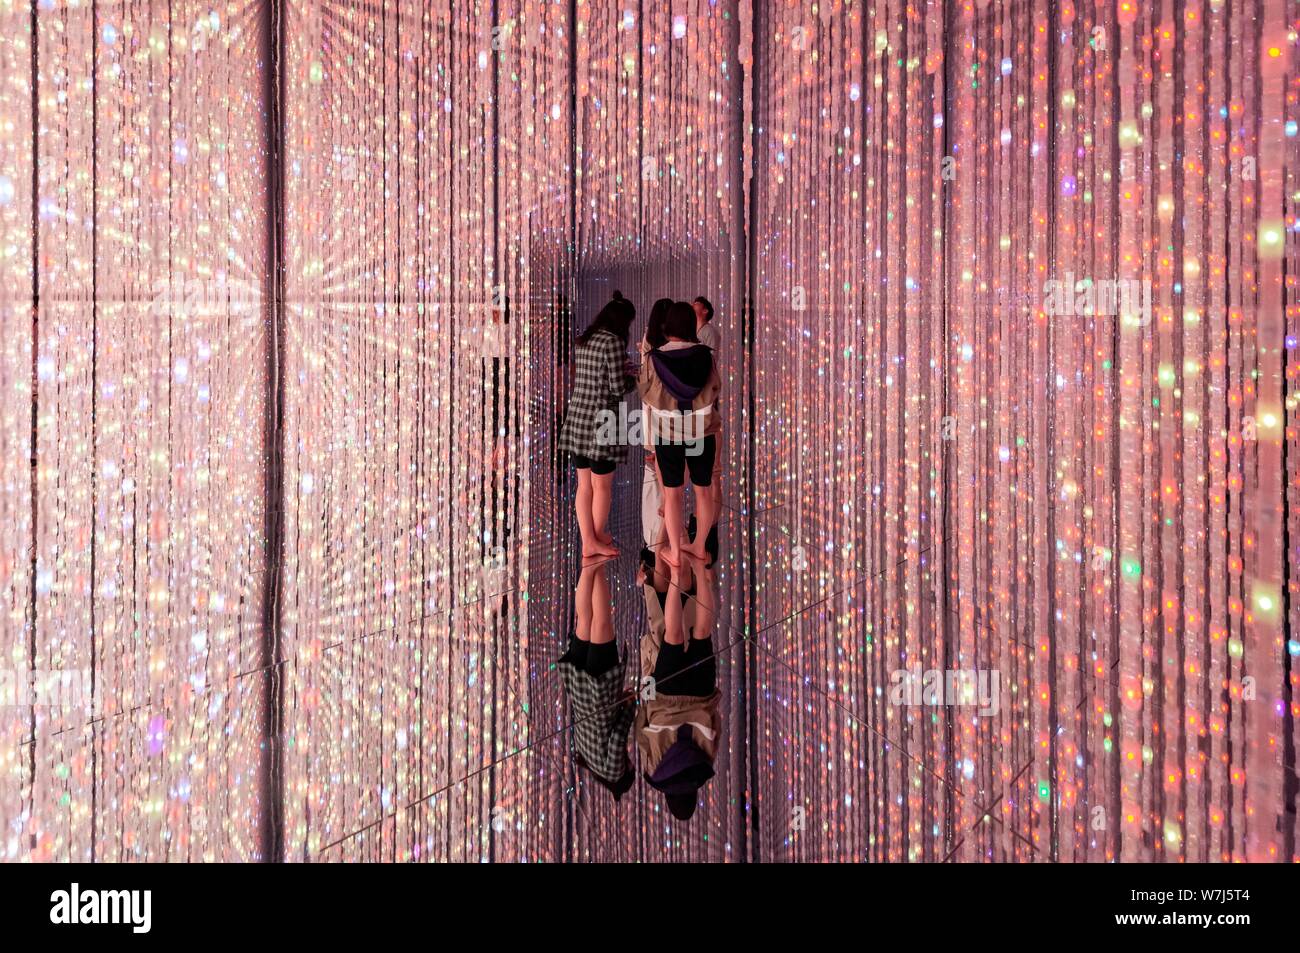 L'installation de LED, les visiteurs dans le Digital Art Museum, TeamLab planètes, Koto City, Tokyo, Japon Banque D'Images